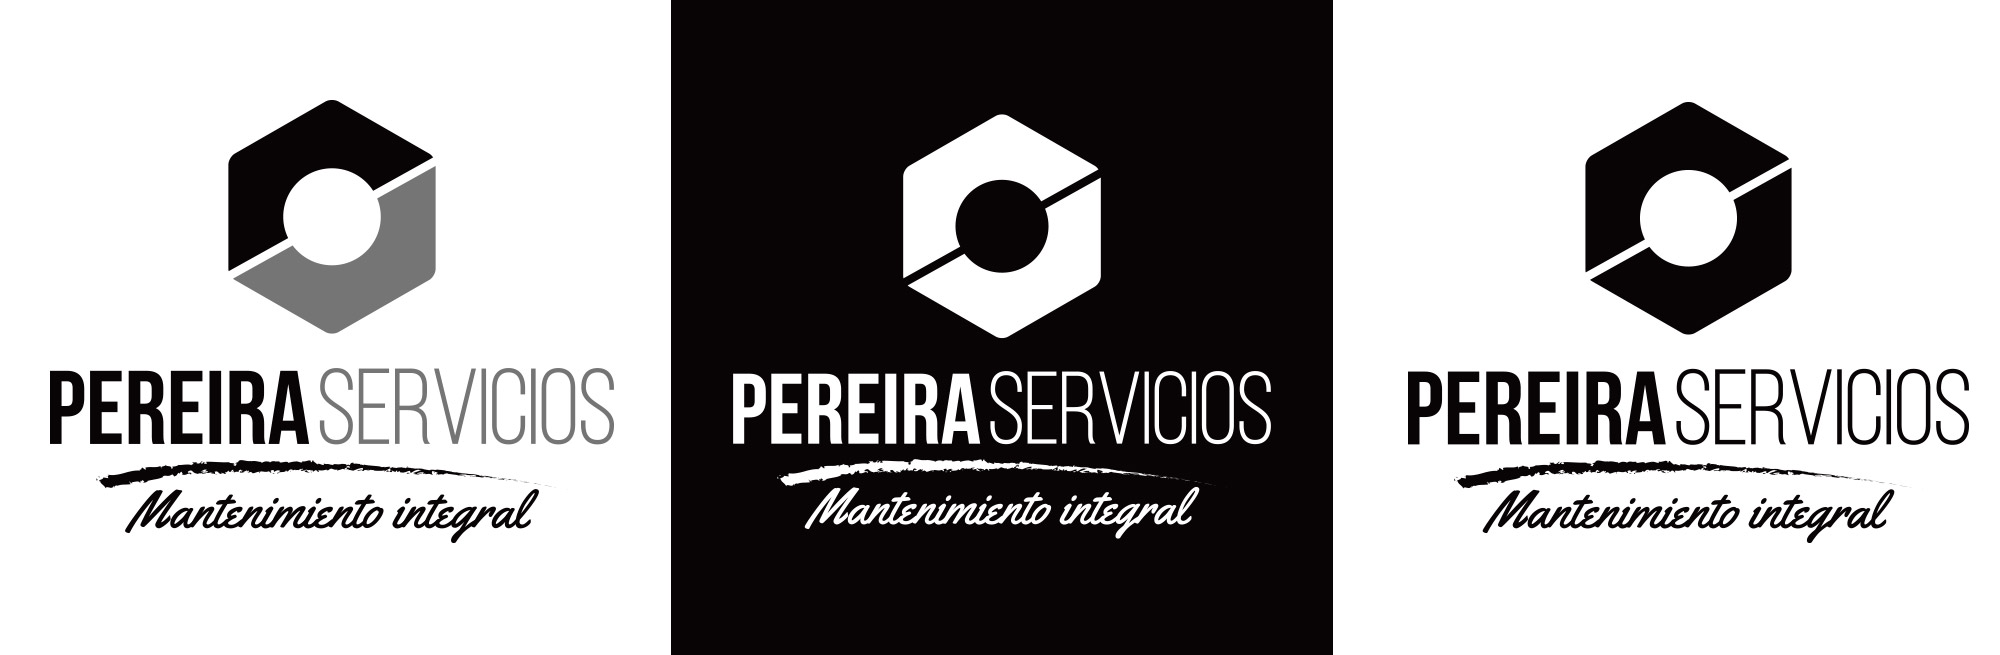 Pereira servicios - logotype versions